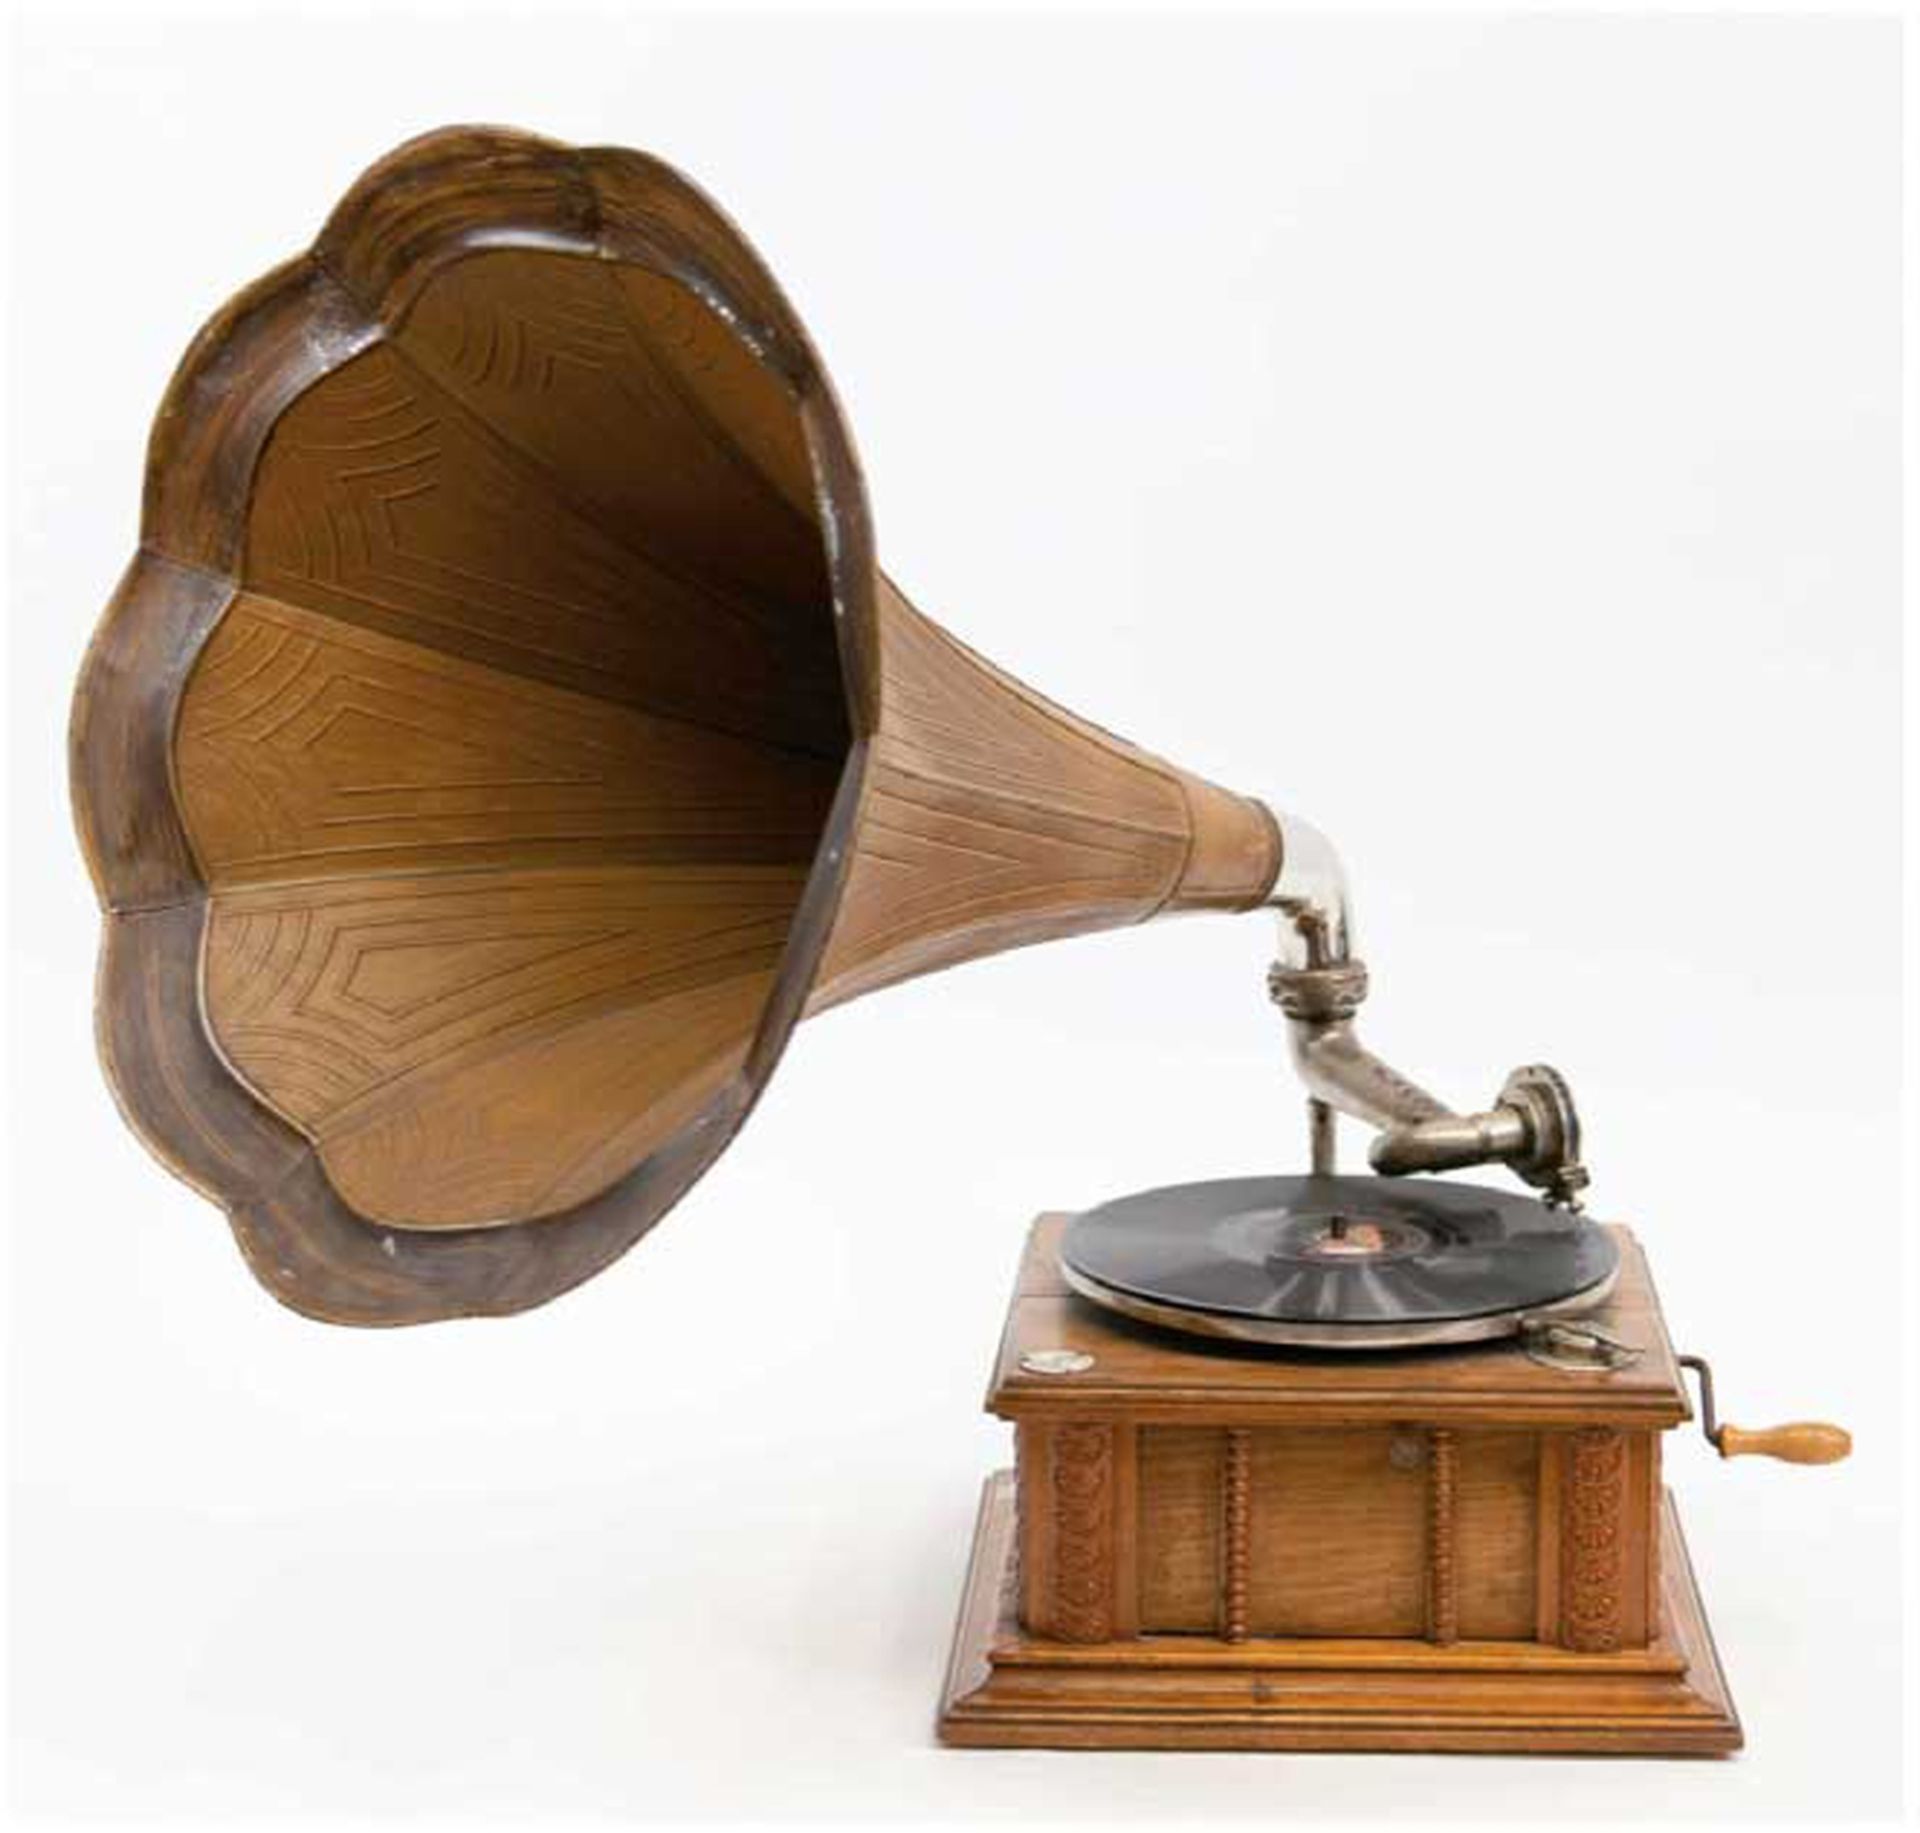 Trichter-Grammophon, Eiche und Metallguß, farbig lackiert, profilgerahmter Korpus, Plattenteller mi